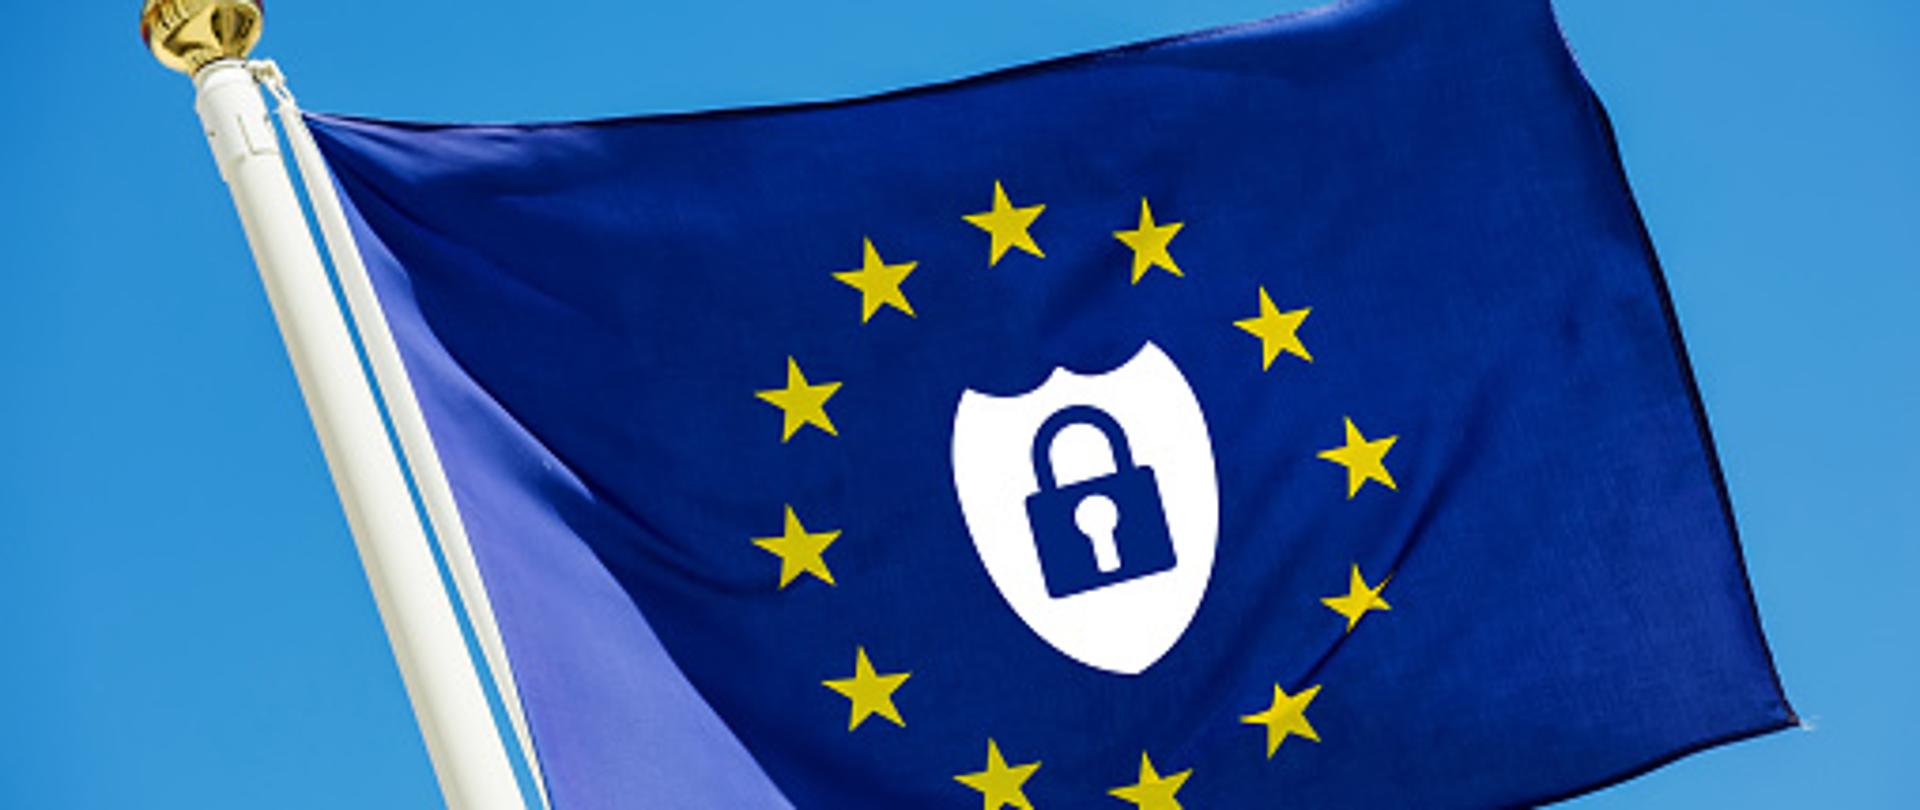 Flaga Unii Europejskiej na błękitnym tle z kłódką bezpieczeństwa w środku